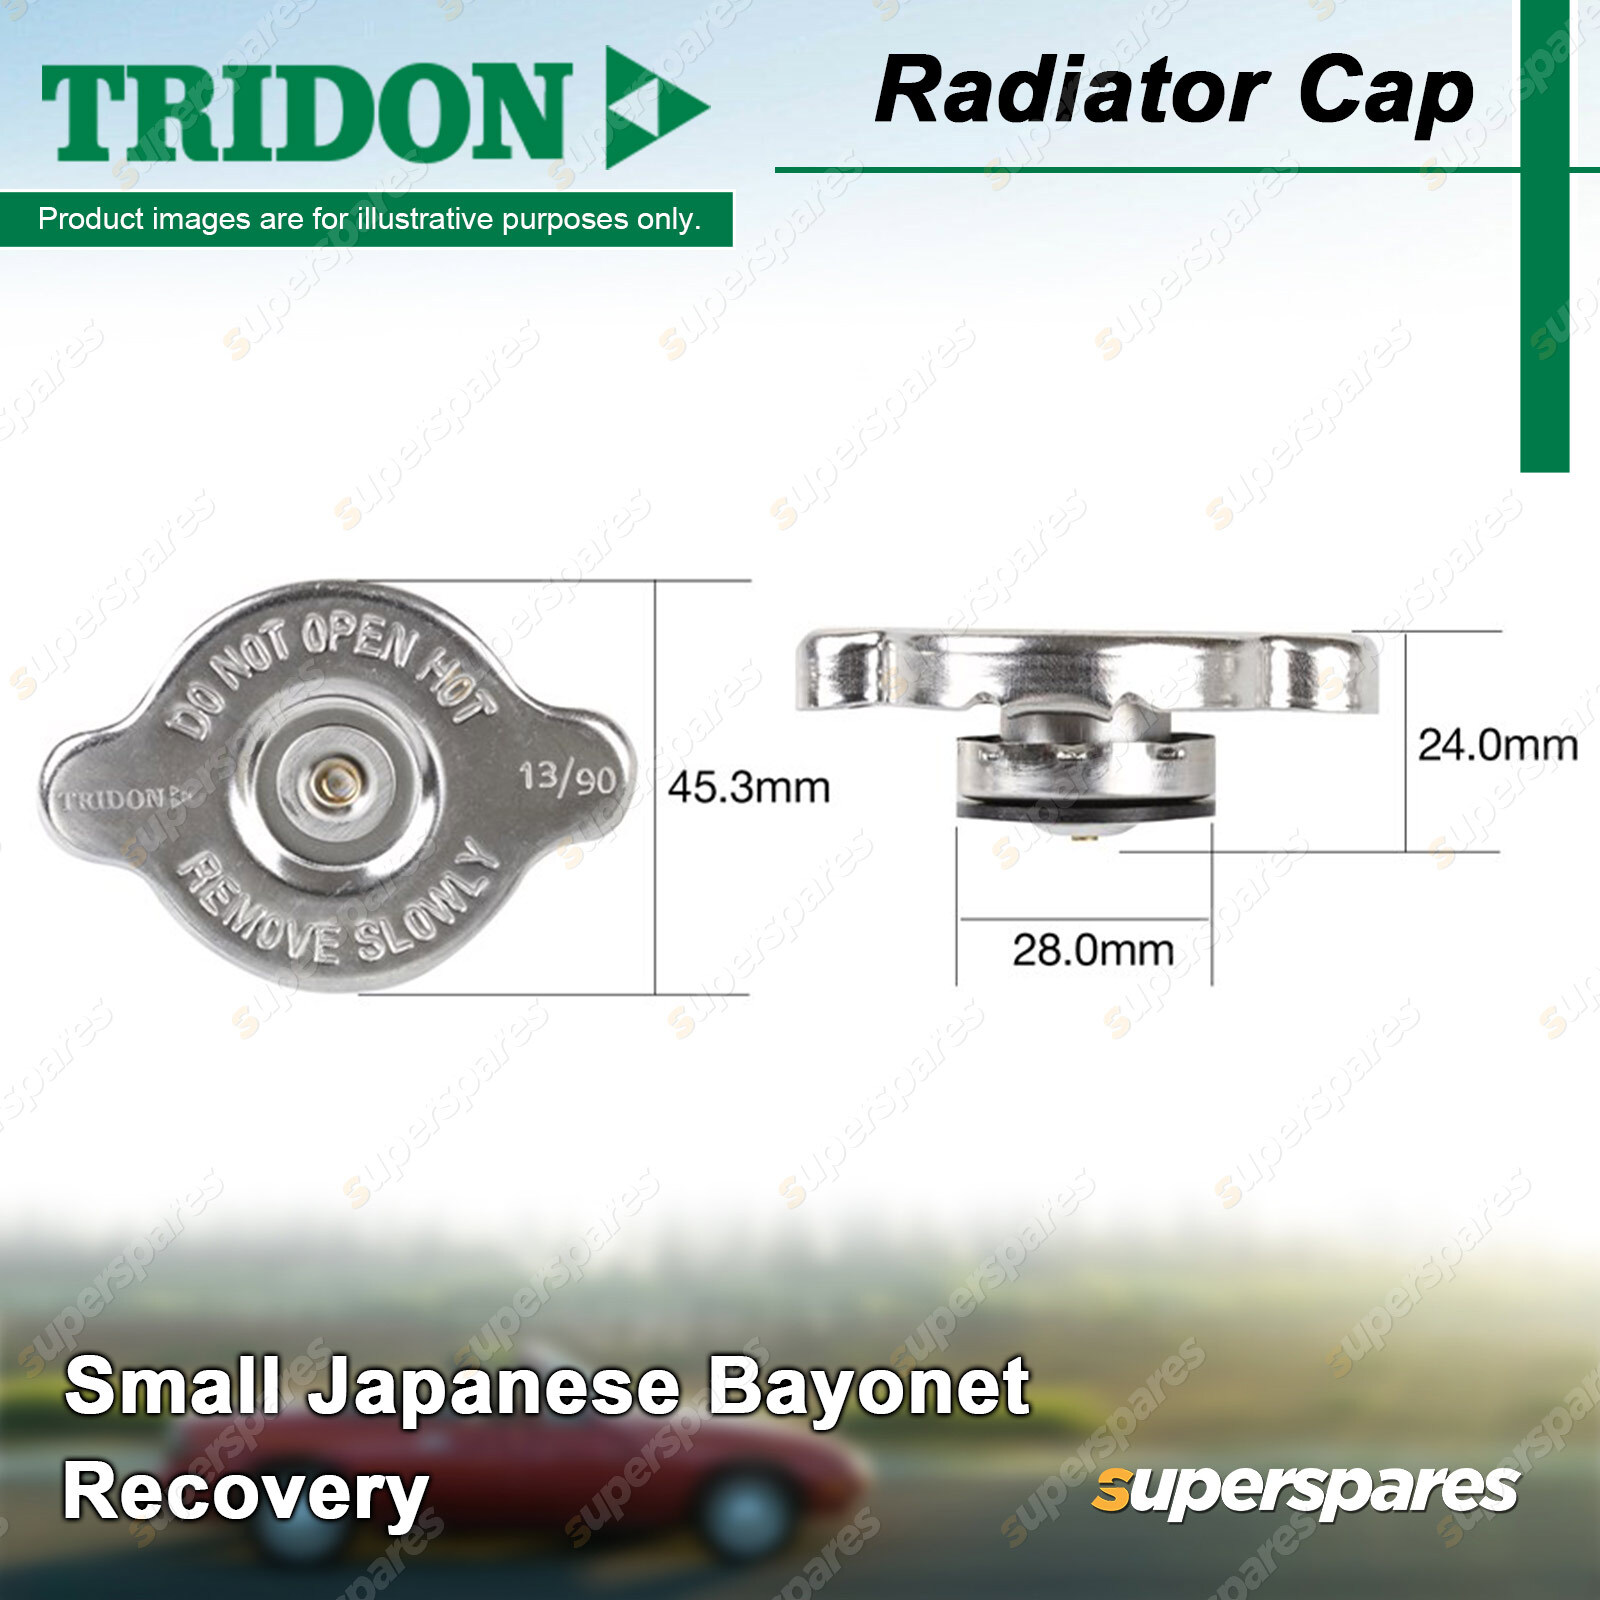 Tridon Radiator Cap for Toyota Soarer Spacia Sprinter Starlet Supra Tarago